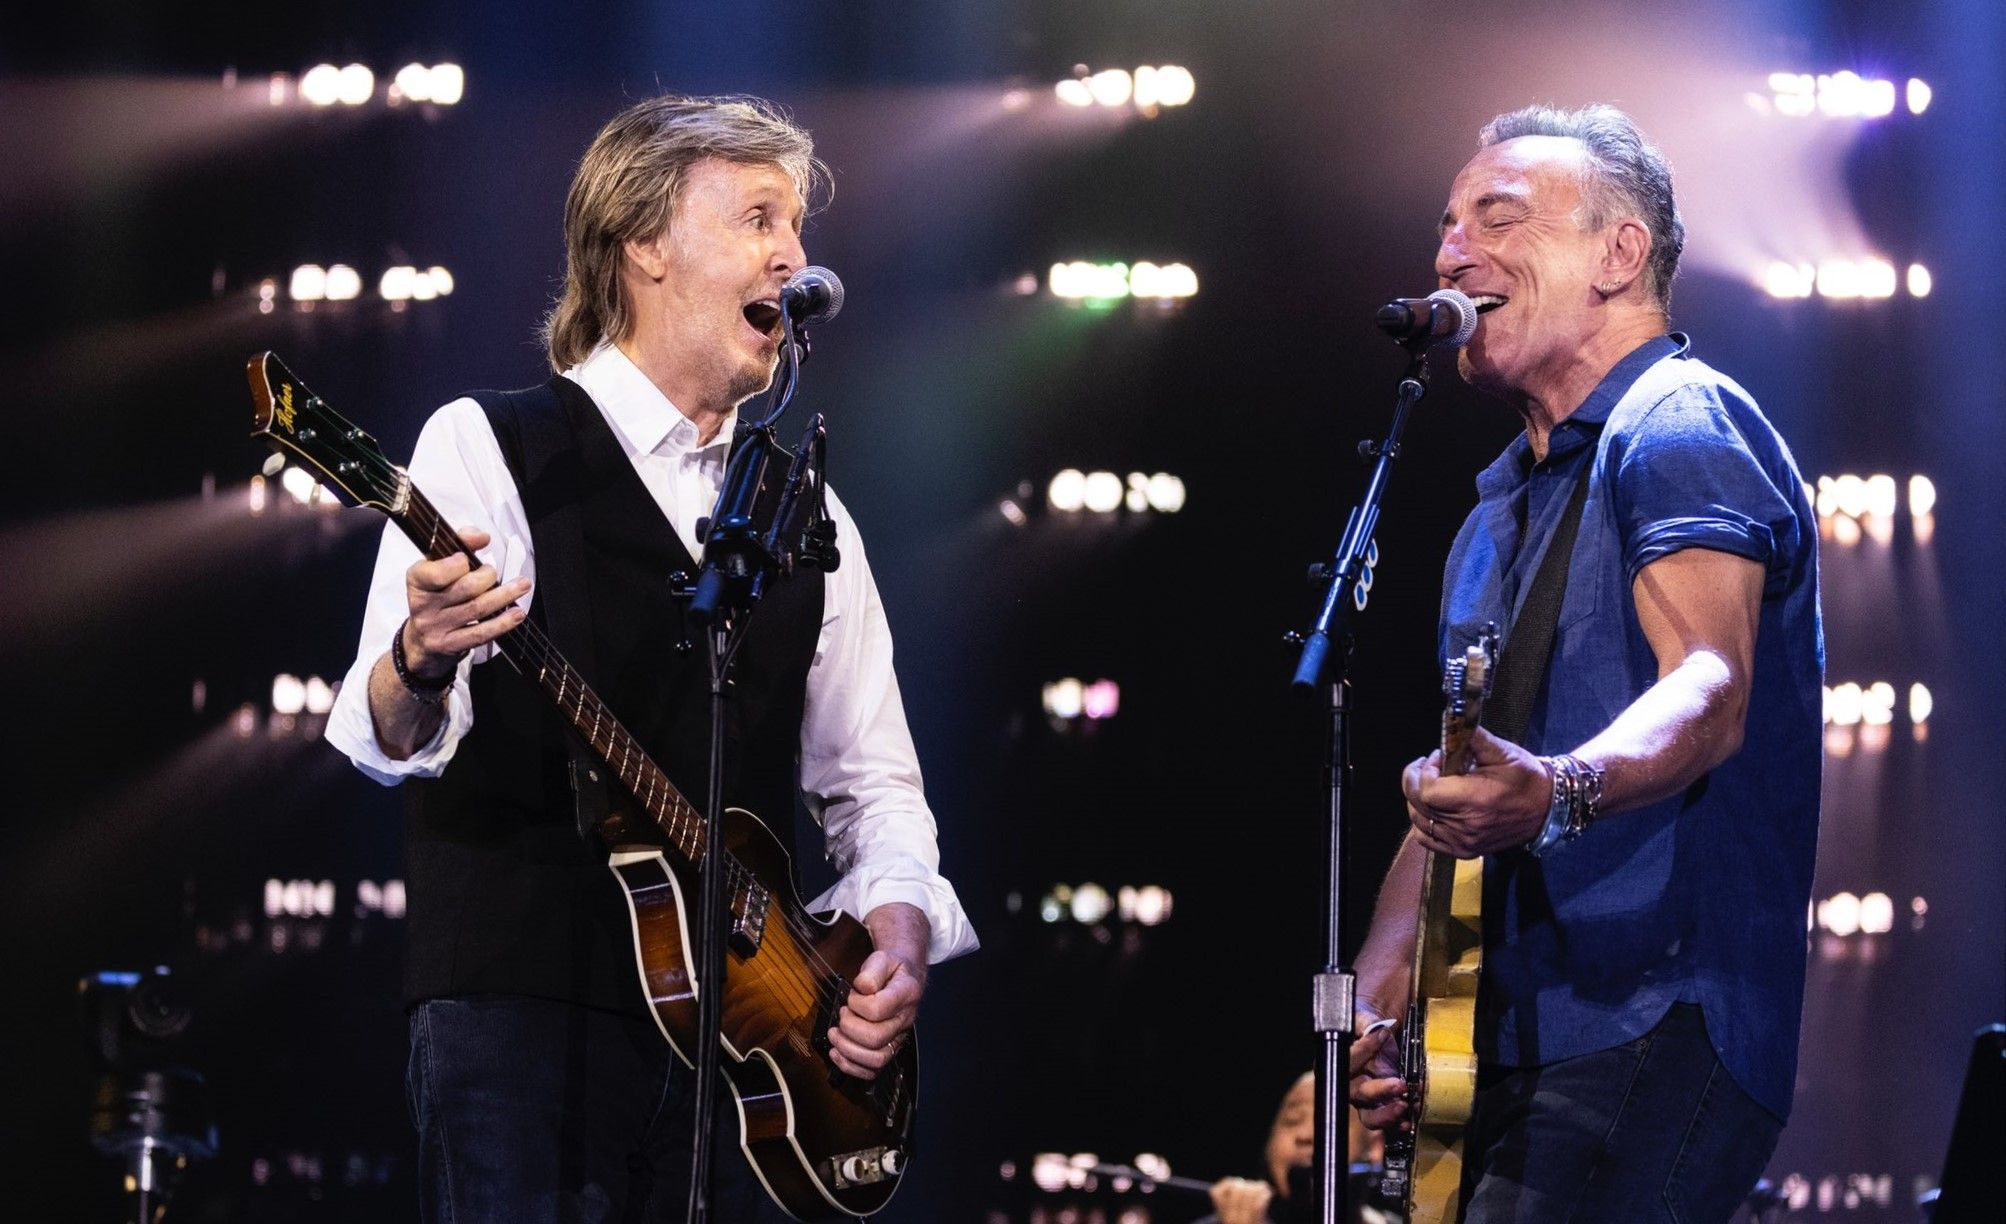 Jon Bon Jovi, Bruce Springsteen join Paul McCartney for tour finale